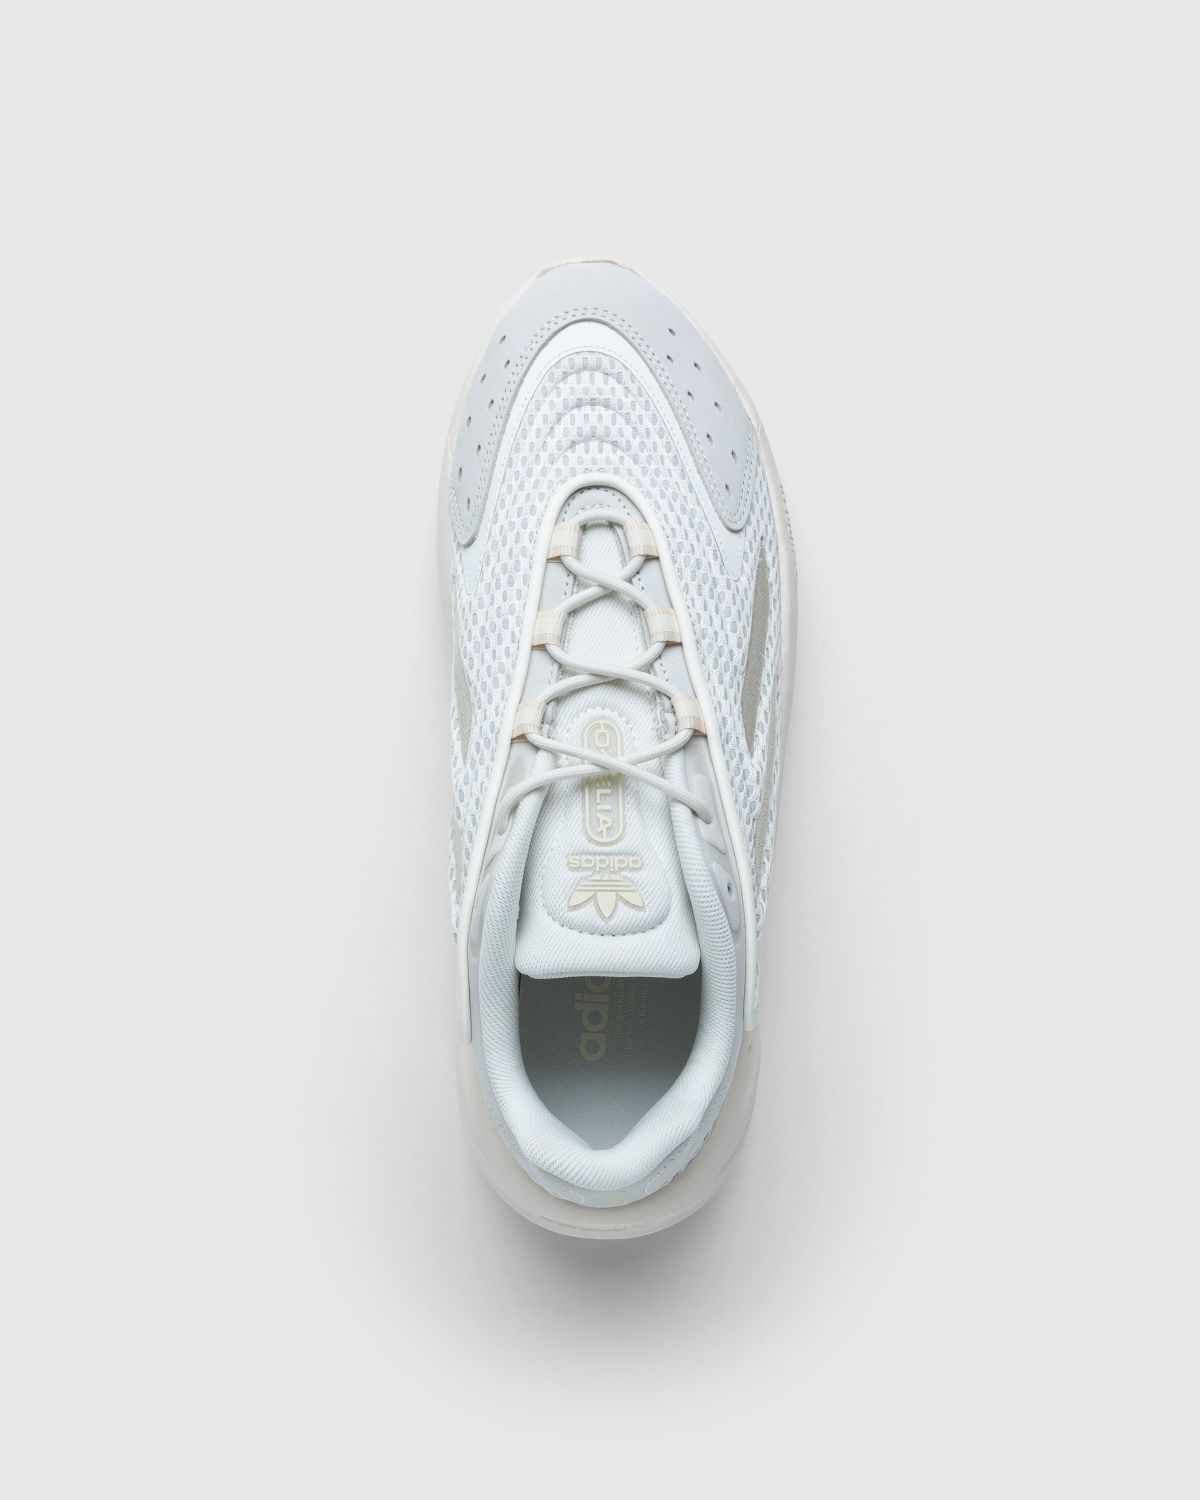 Adidas – Ozelia Off White/White - Sneakers - Beige - Image 5